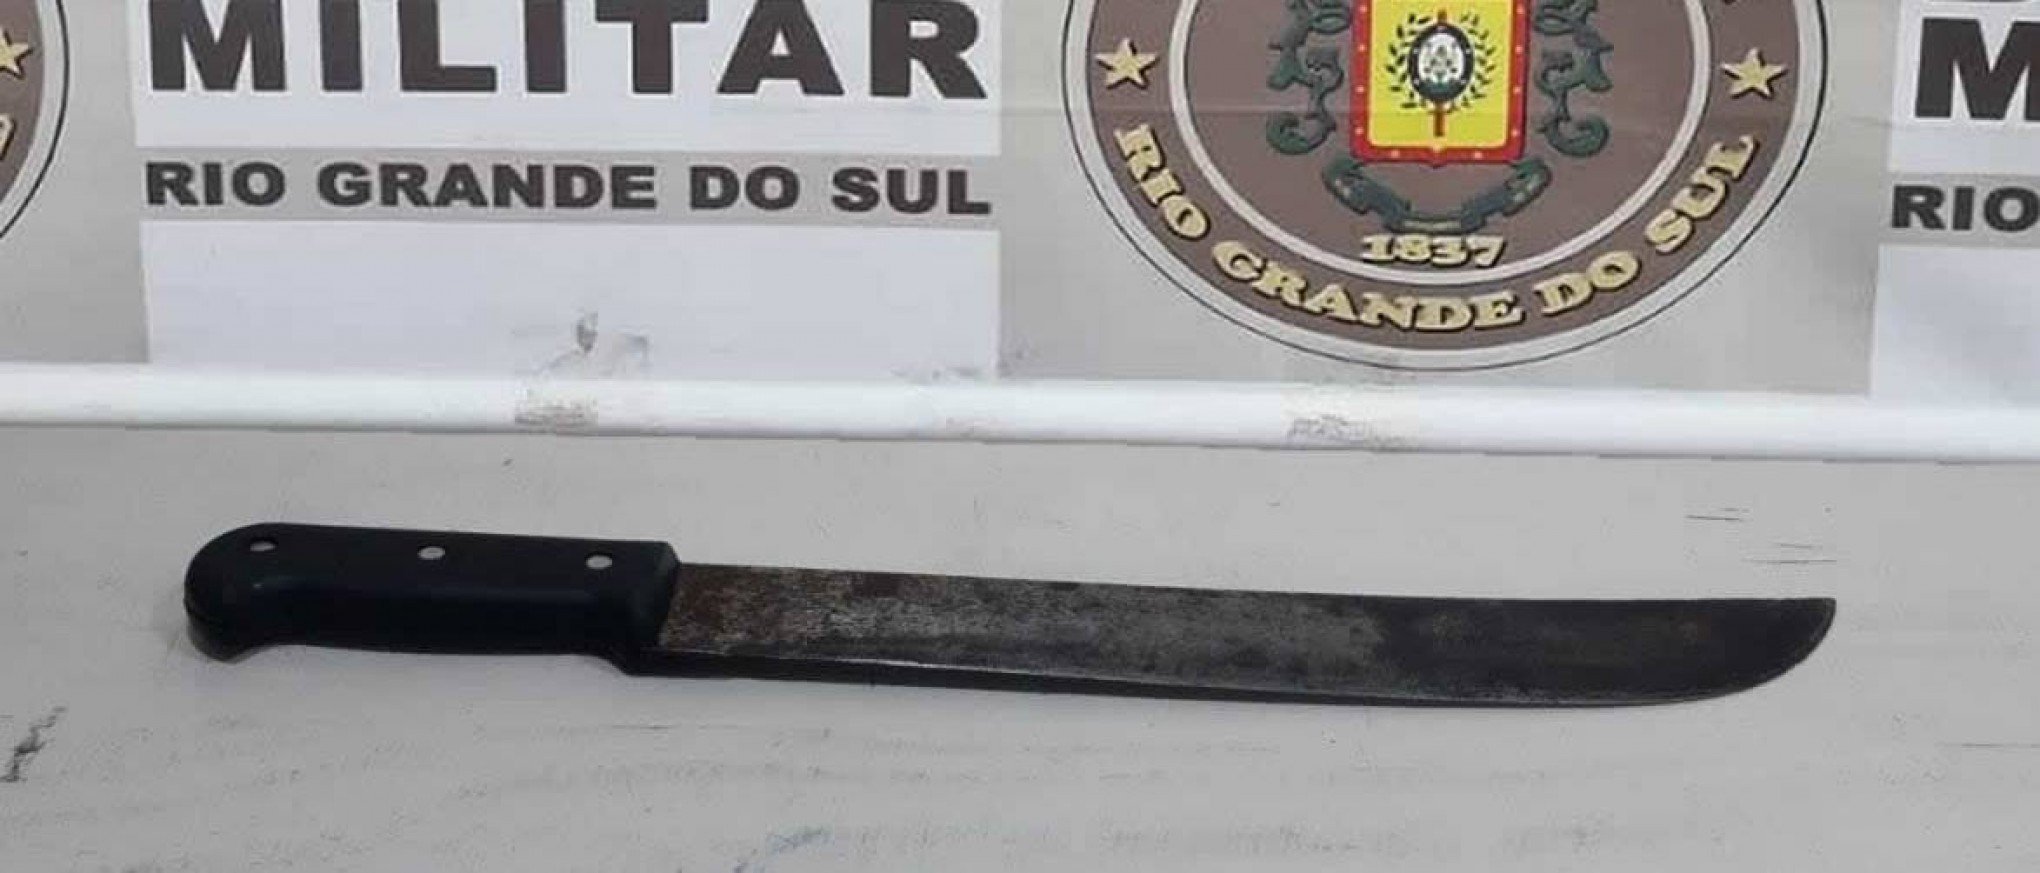 Homem é preso após ameaçar com faca e roubar celular de vítima em Canela